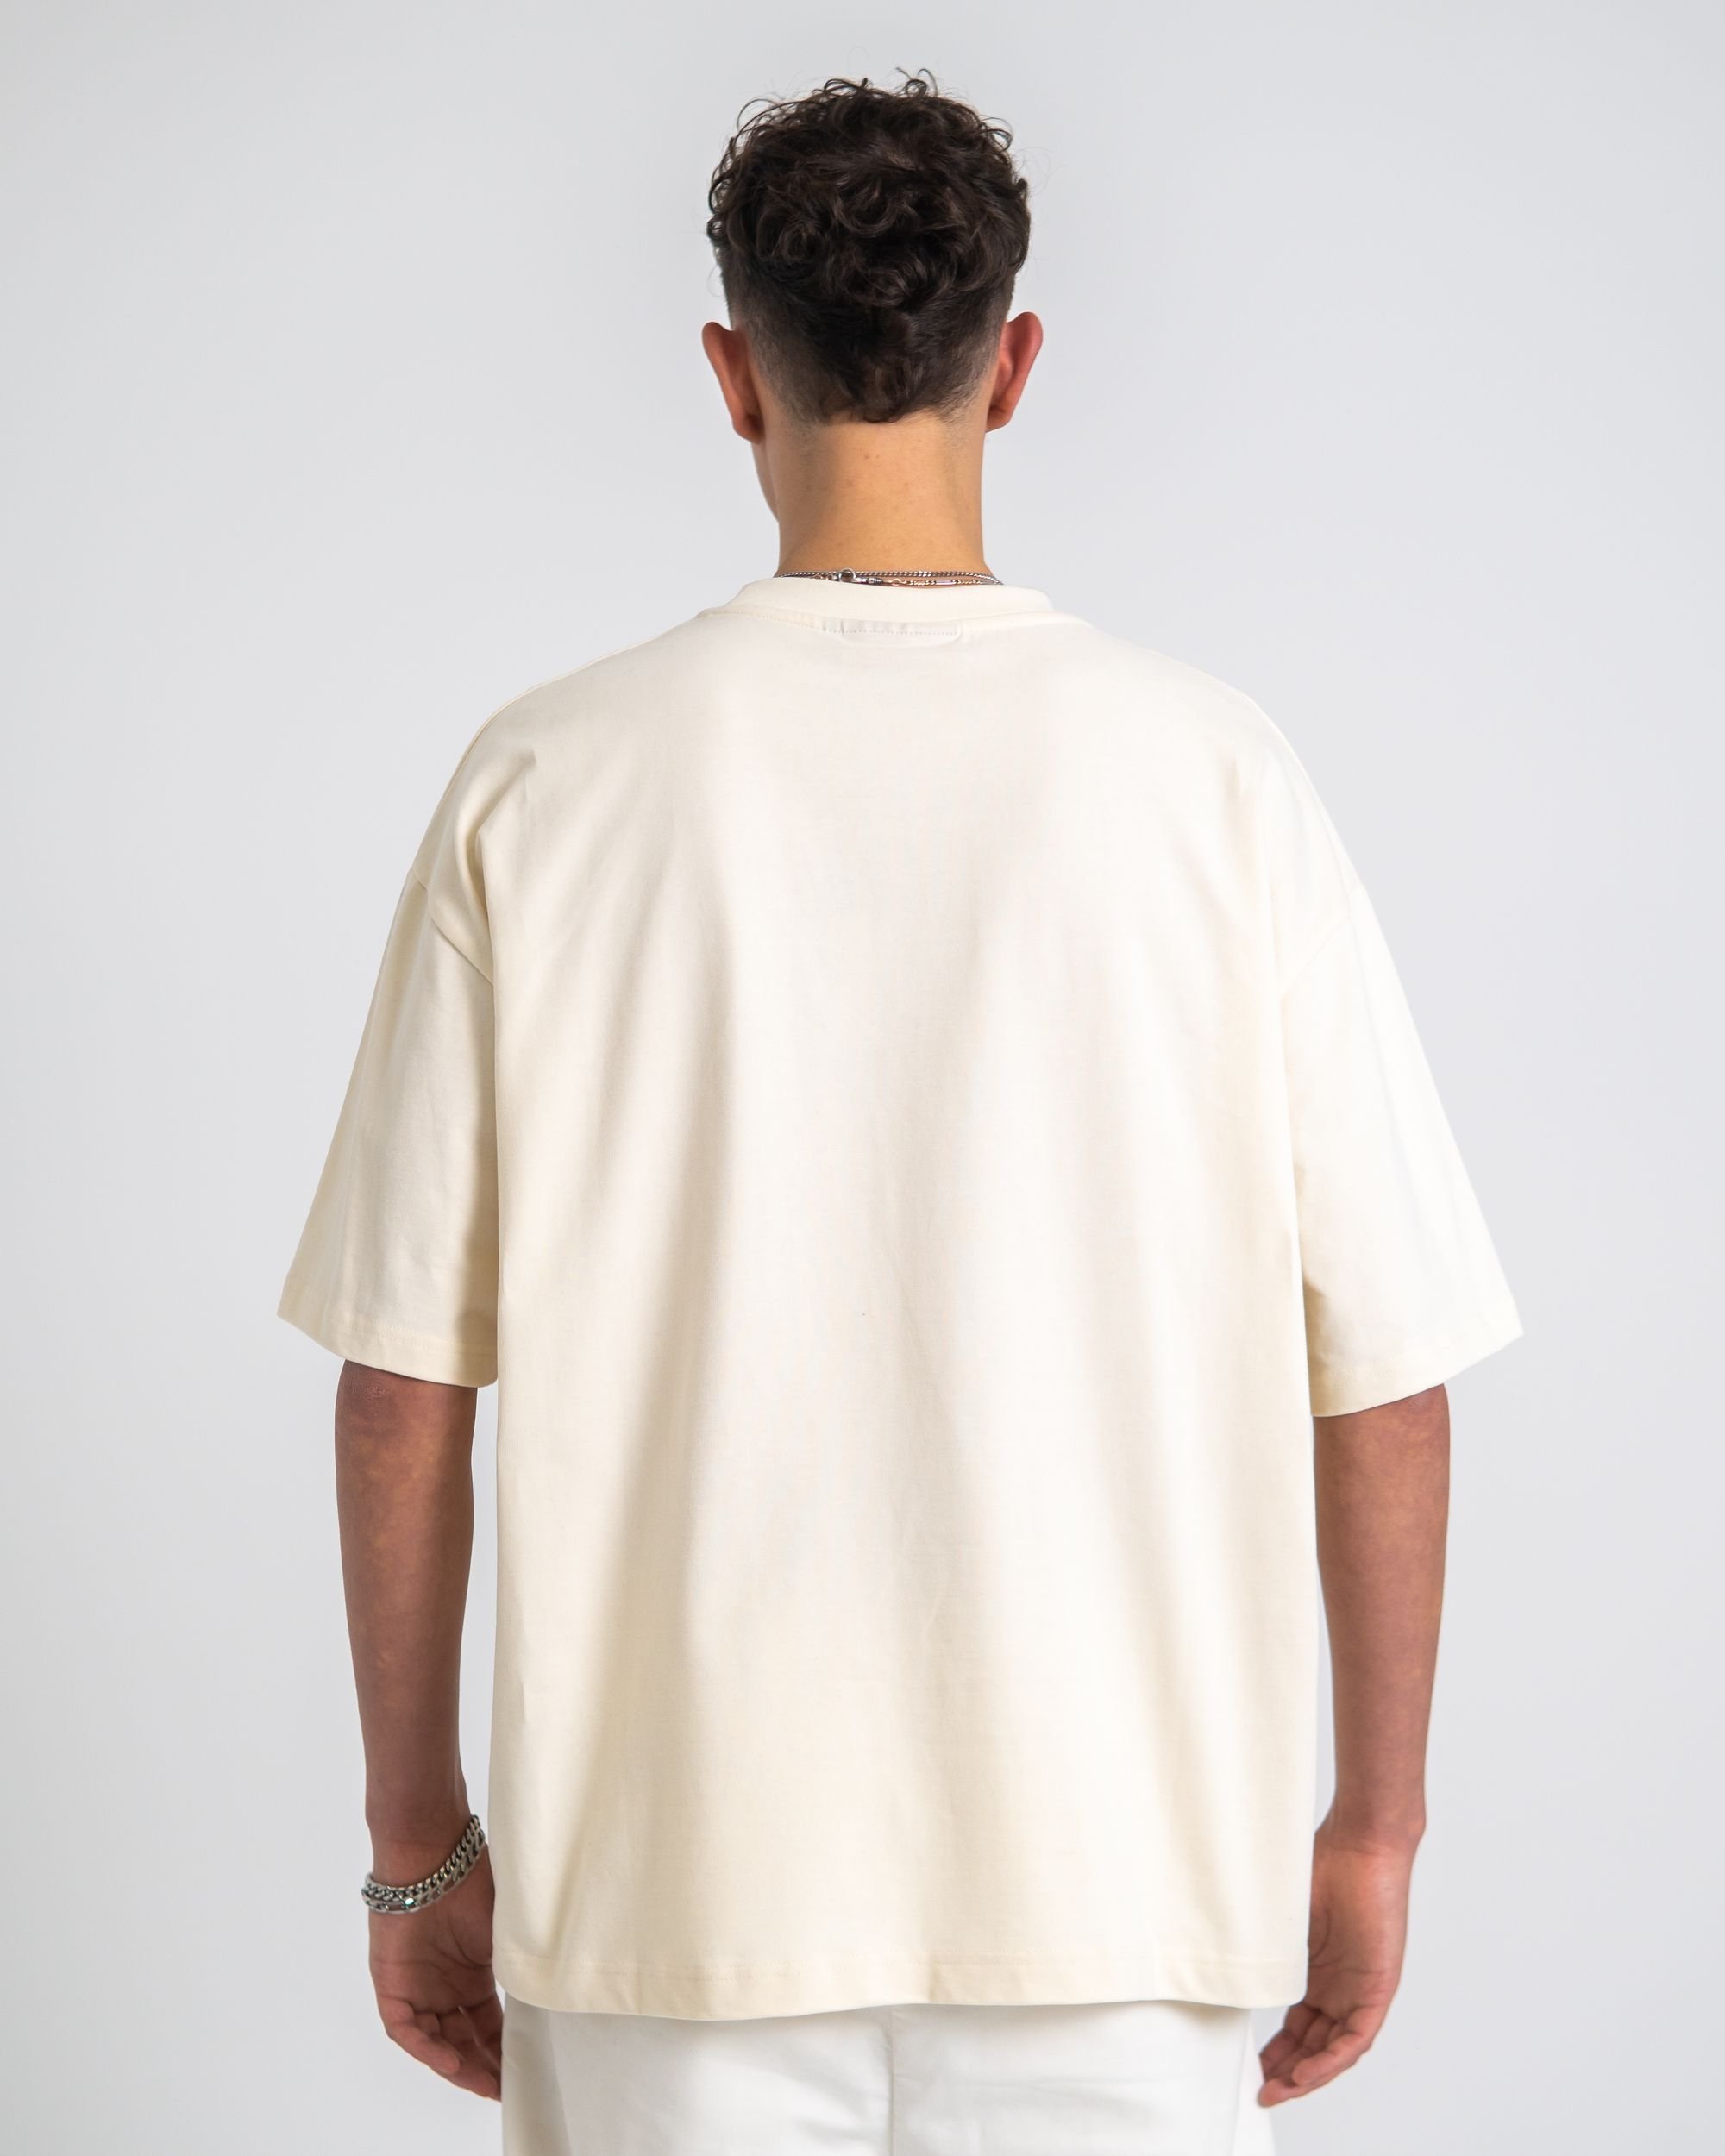  |  Prohibited Authentic Unisex Oversized Shirt | XL | Cream/Light Navy